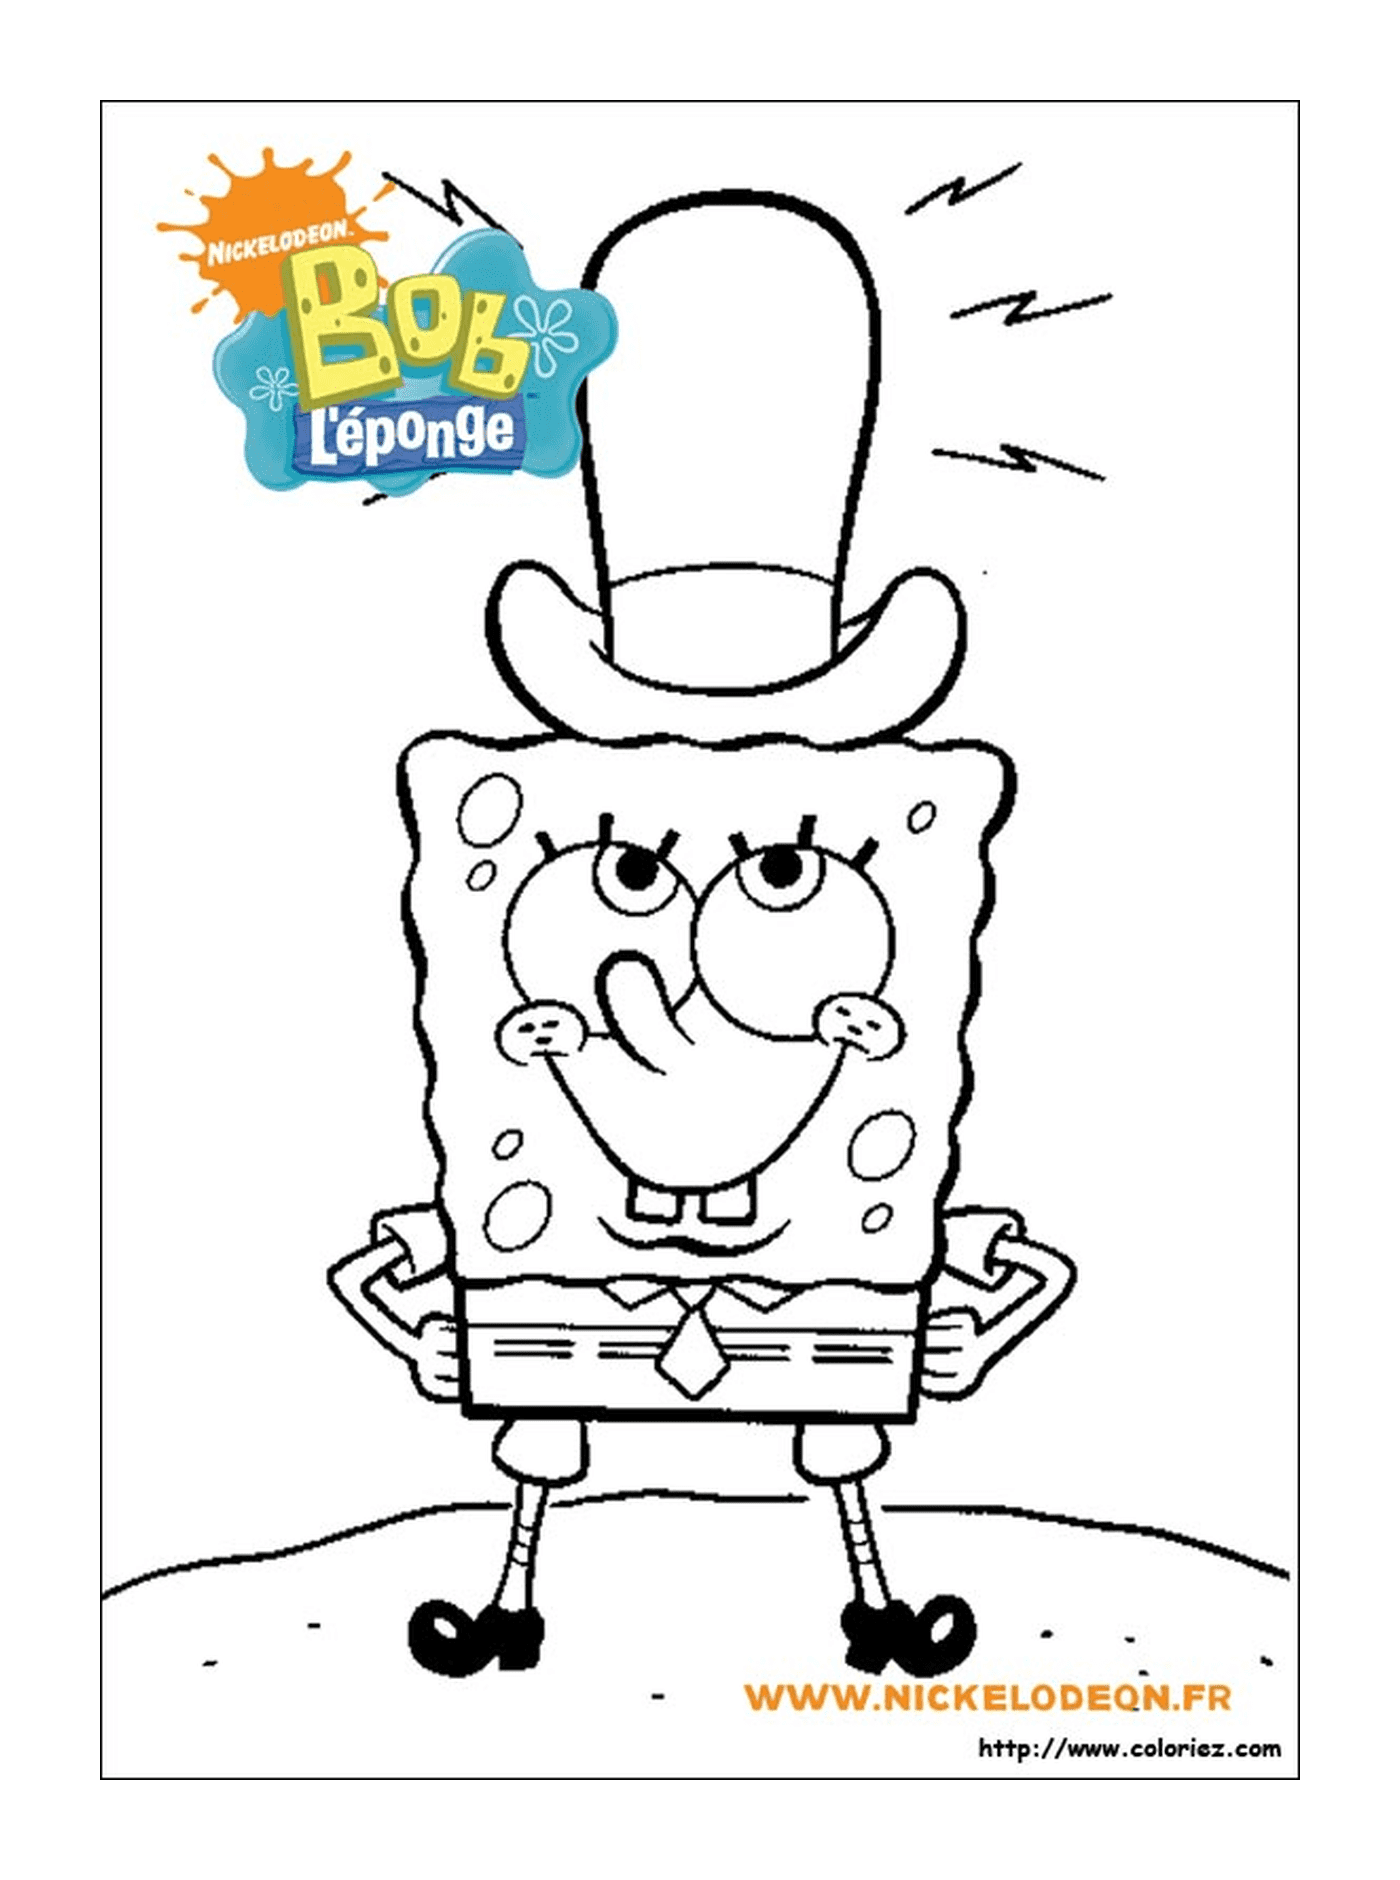  Ein Spongebob trägt eine Top-of-the-shape 